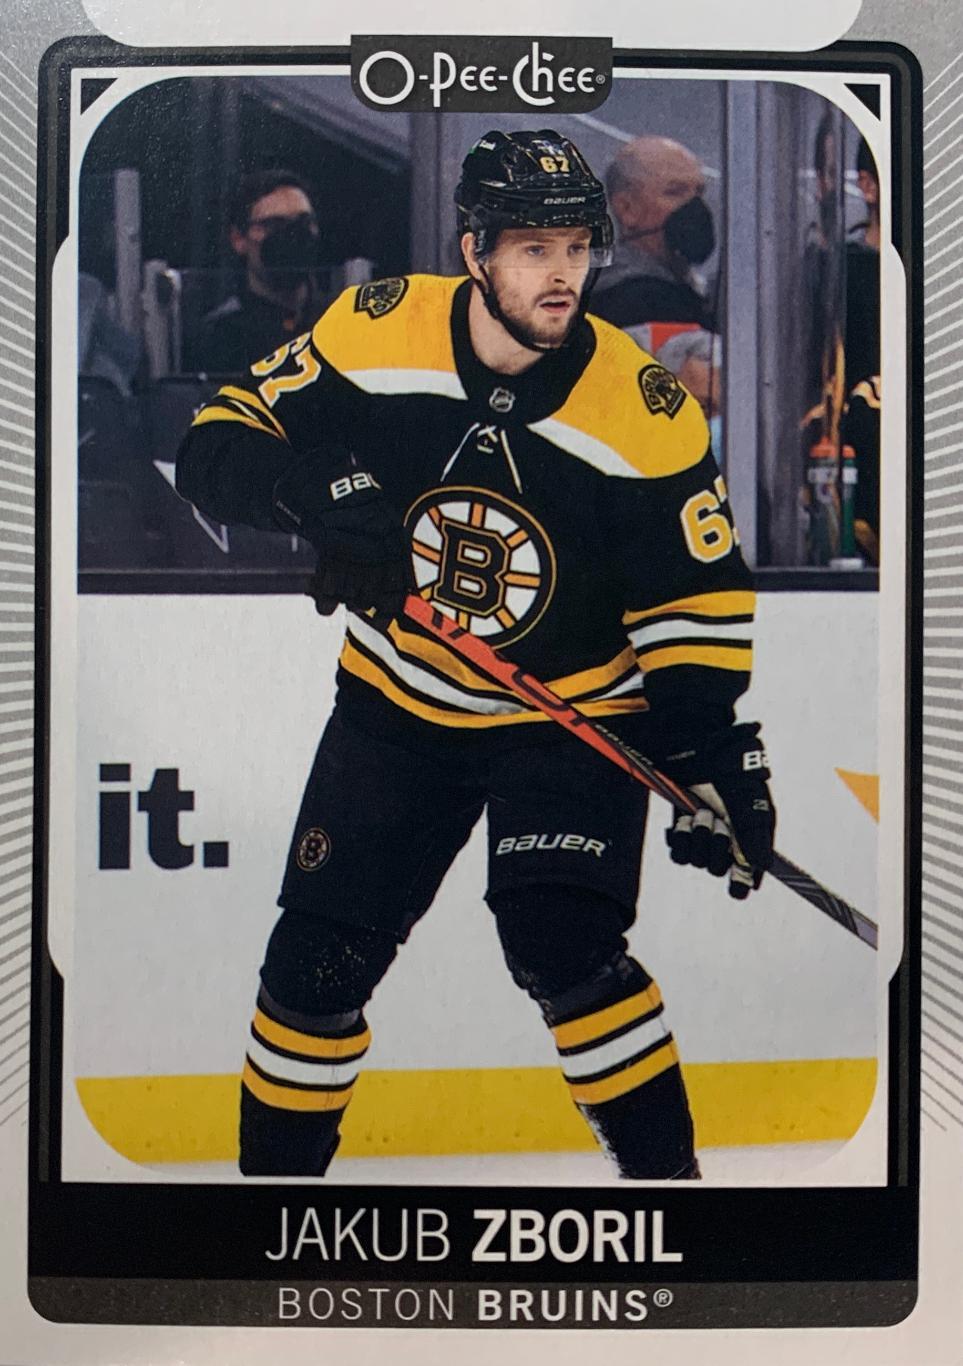 Хоккей. Карточка Jakub Zboril-Якуб Зборжил Boston Bruins - Бостон Брюинз НХЛ/NHL